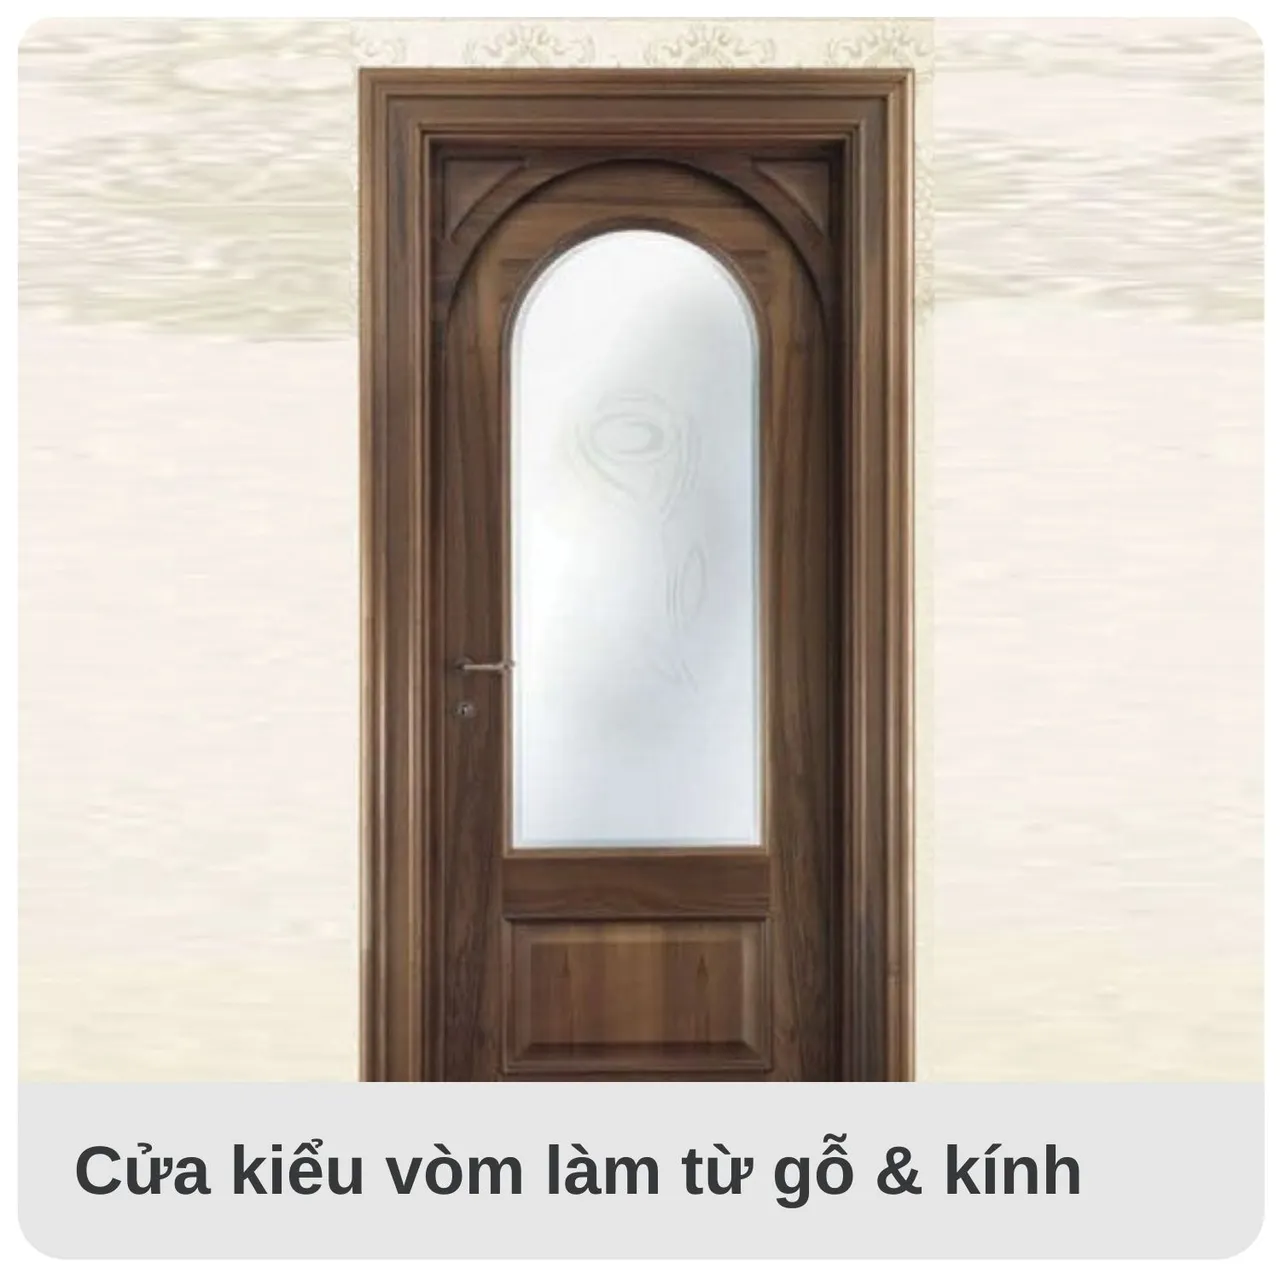 Mẫu cửa gỗ vòm làm từ gỗ kết hợp với kính